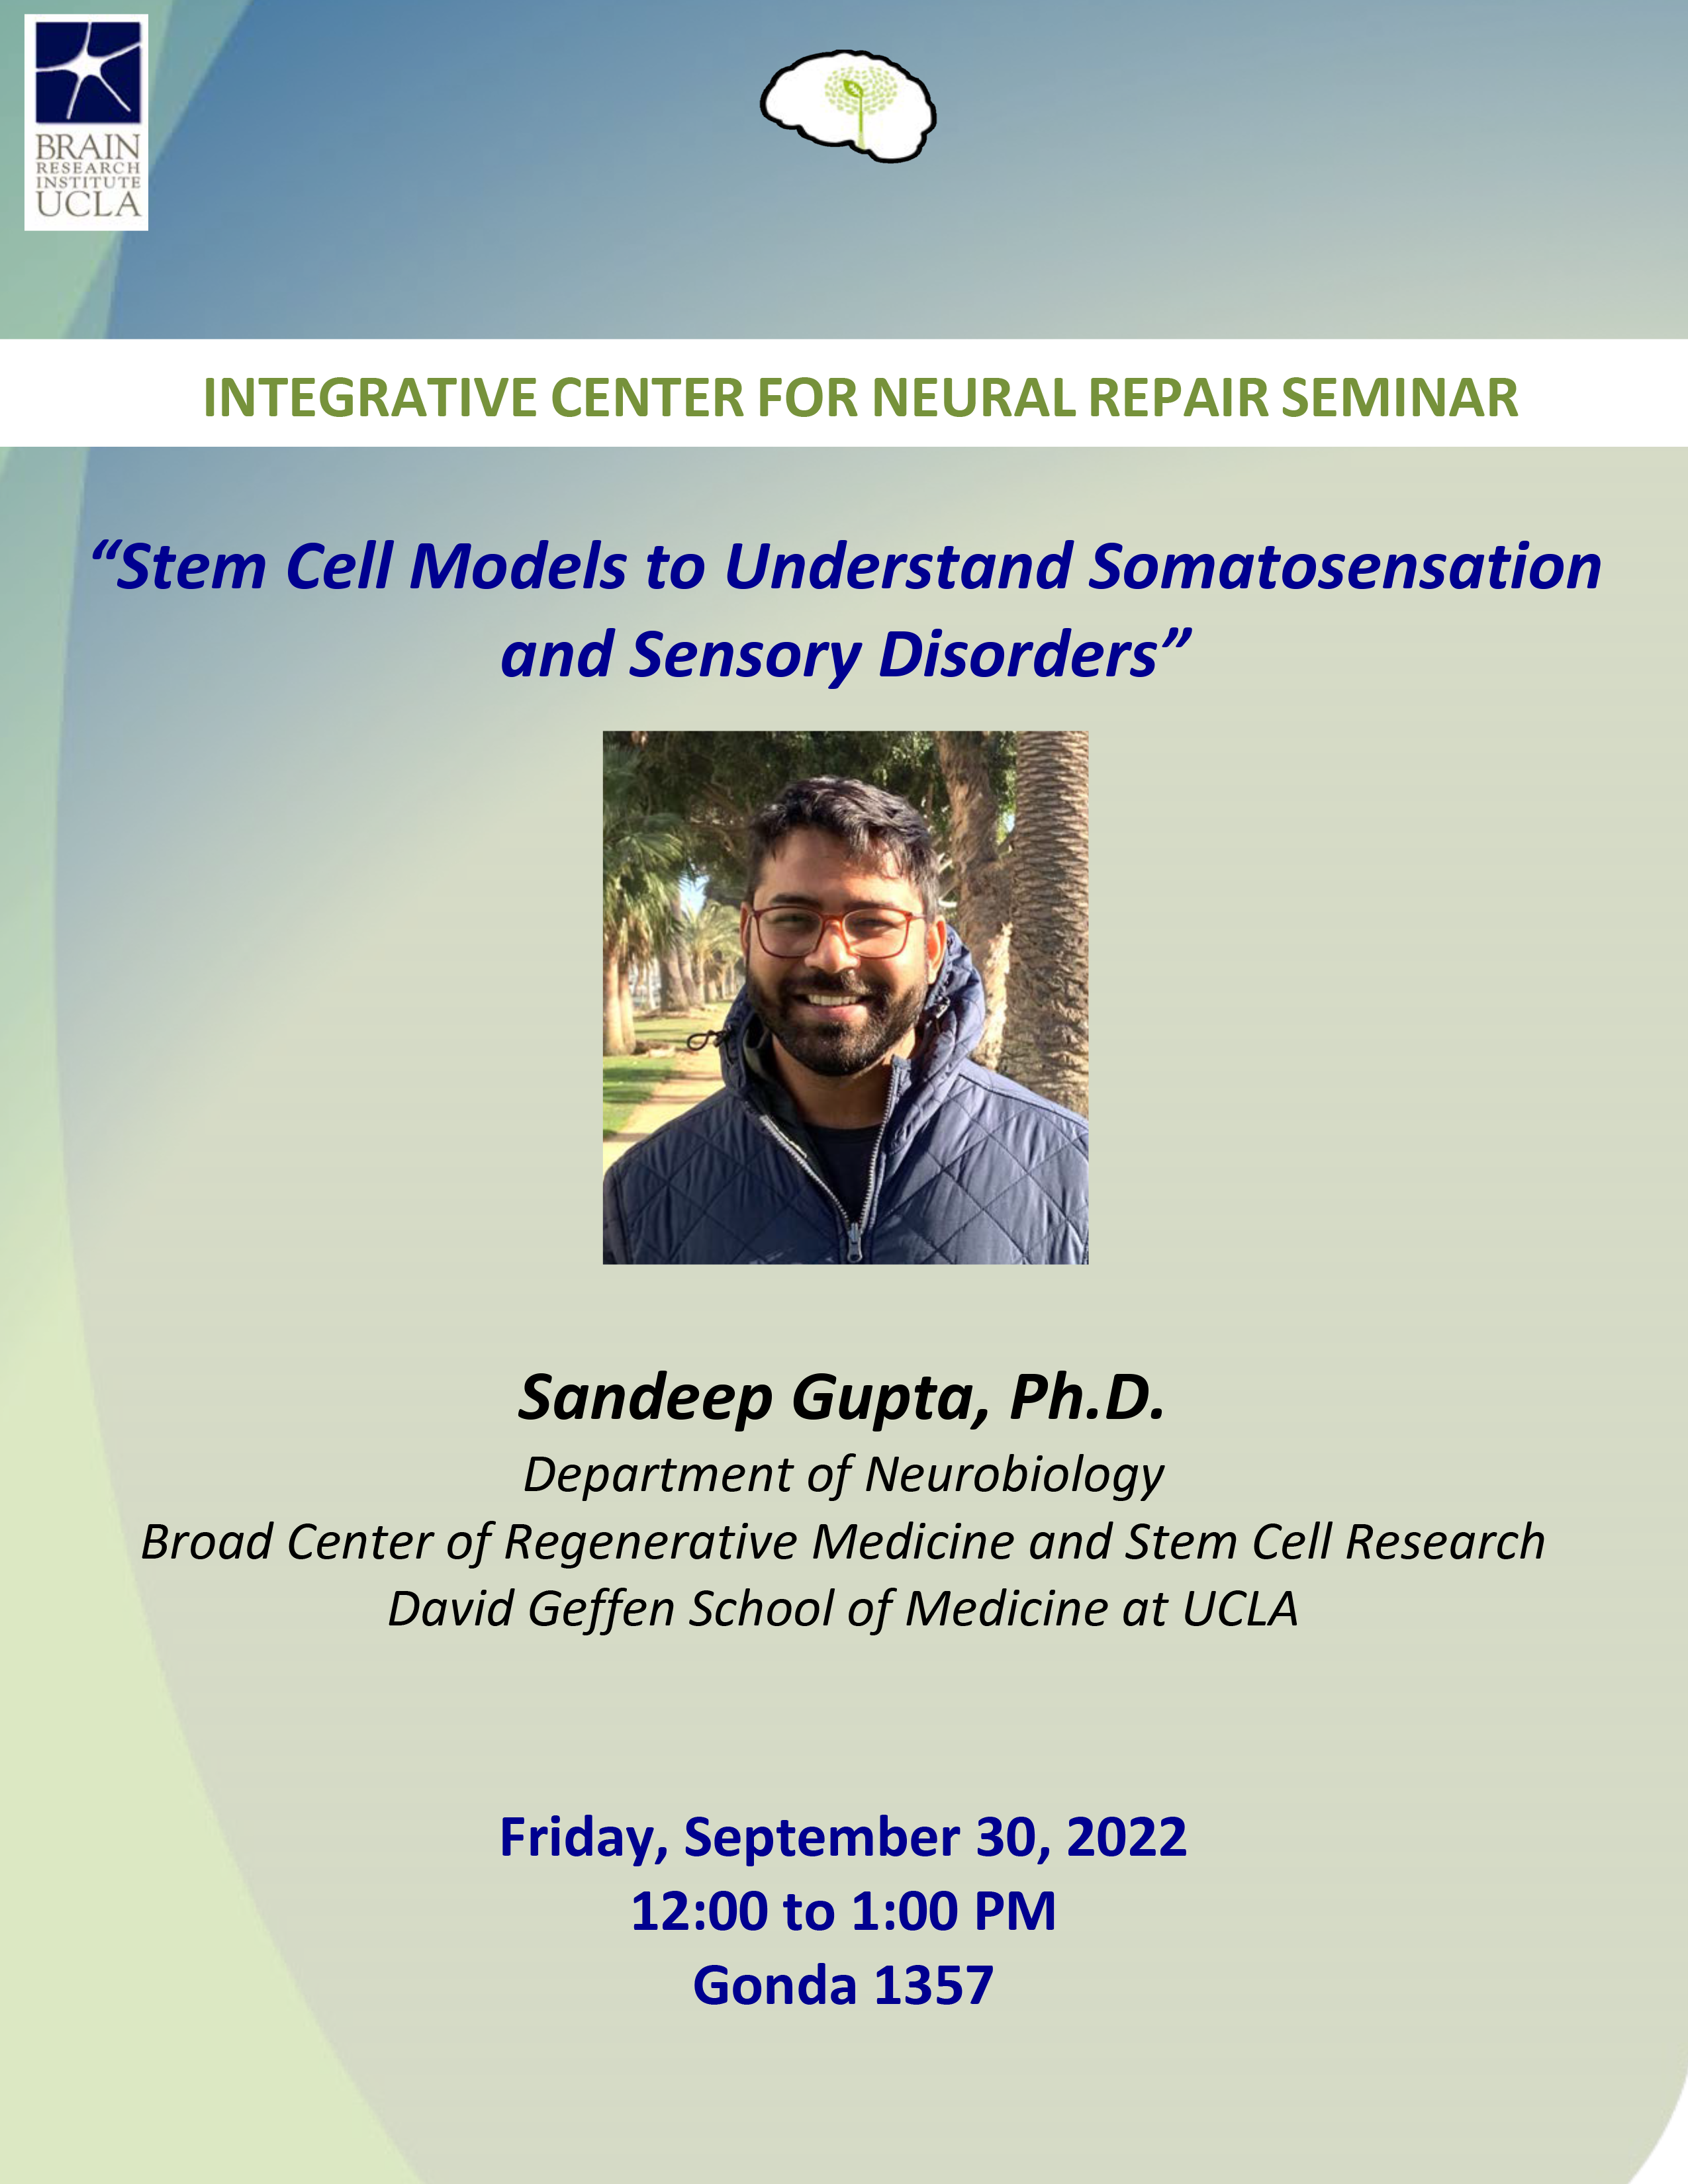 Sandeep gives Neural Repair